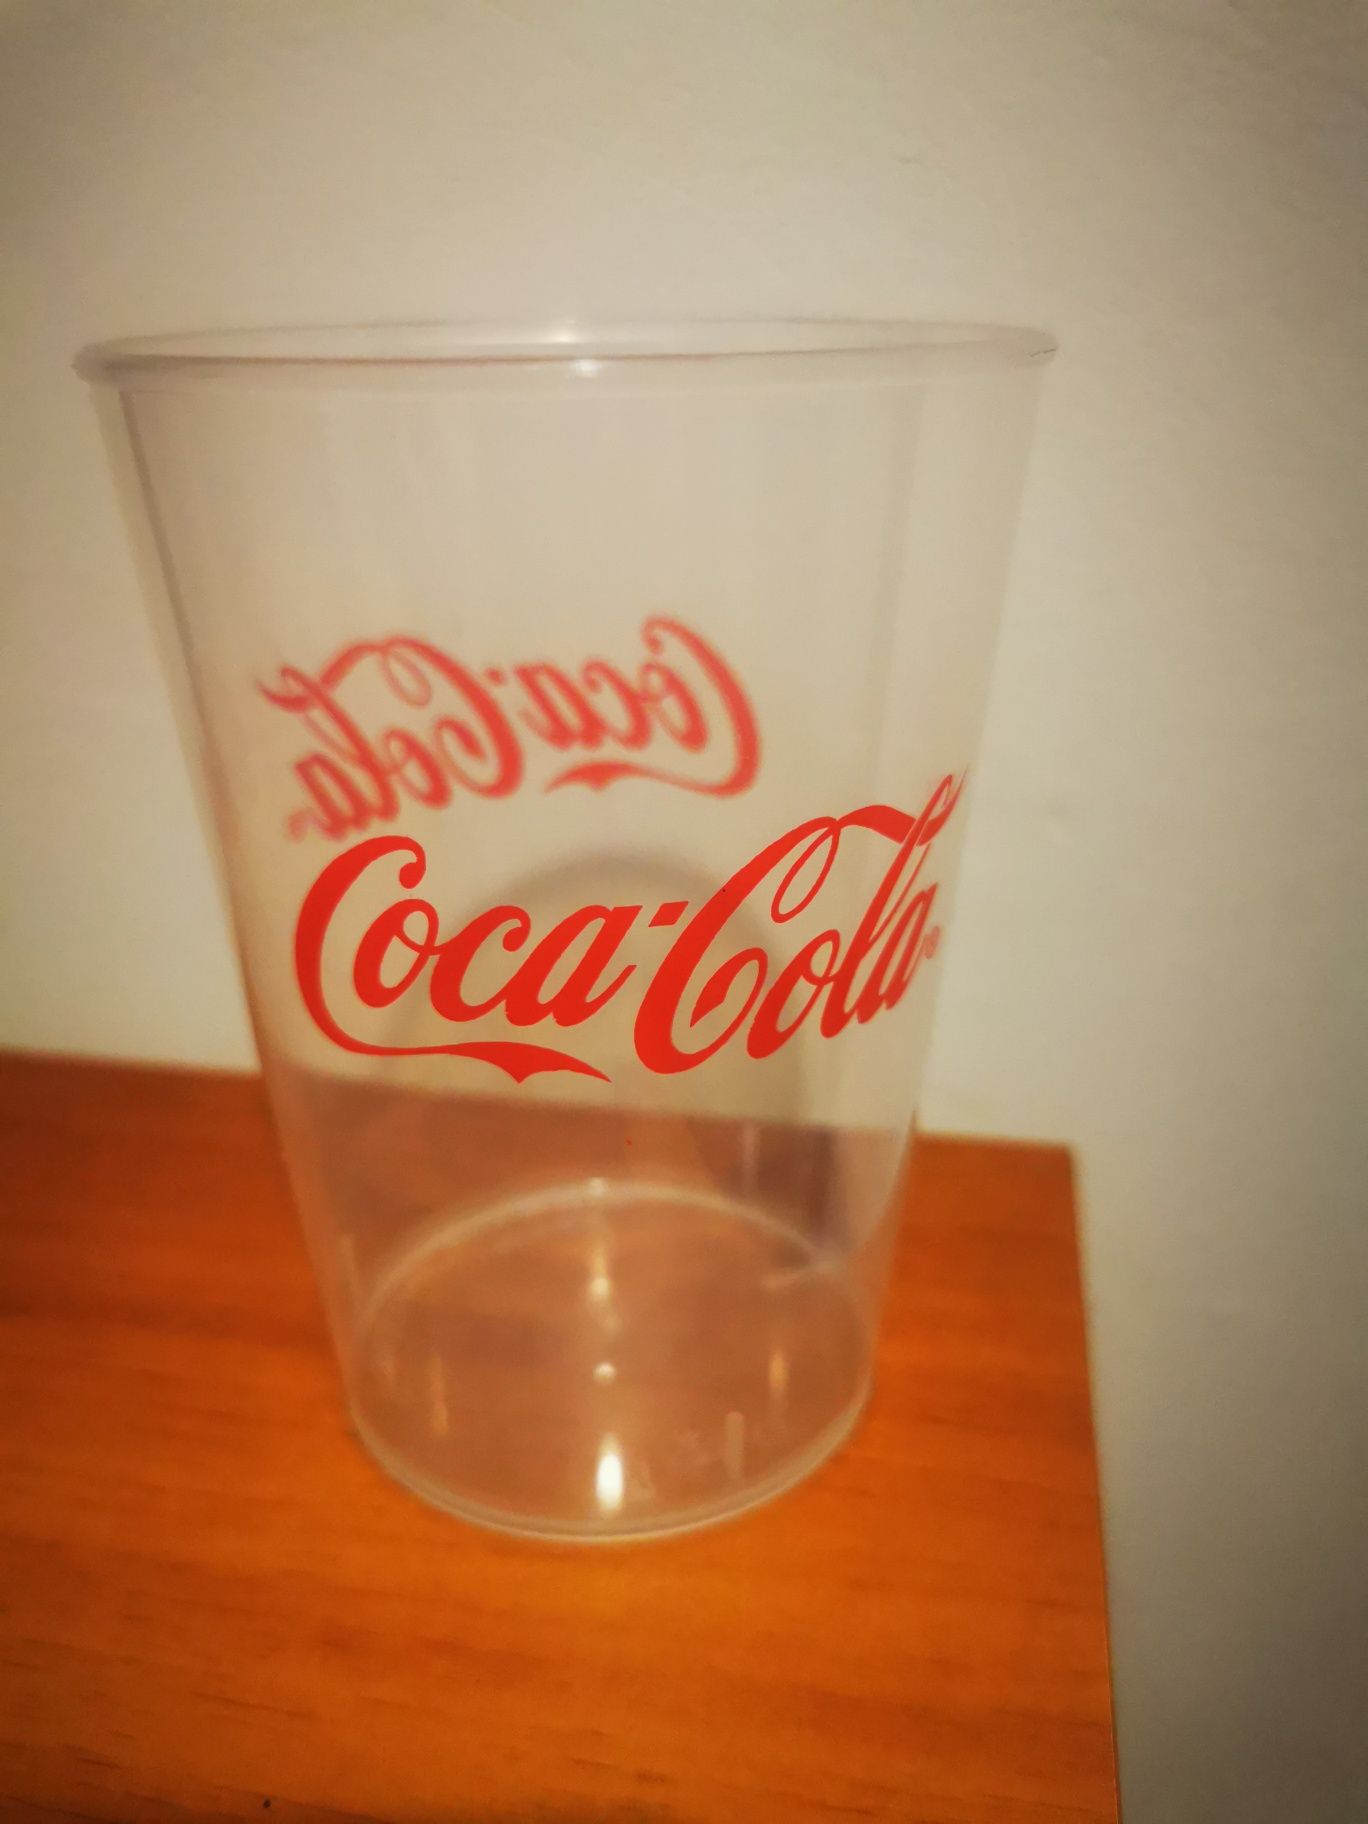 Pahare Coca Cola Fanta Sprite de colectie